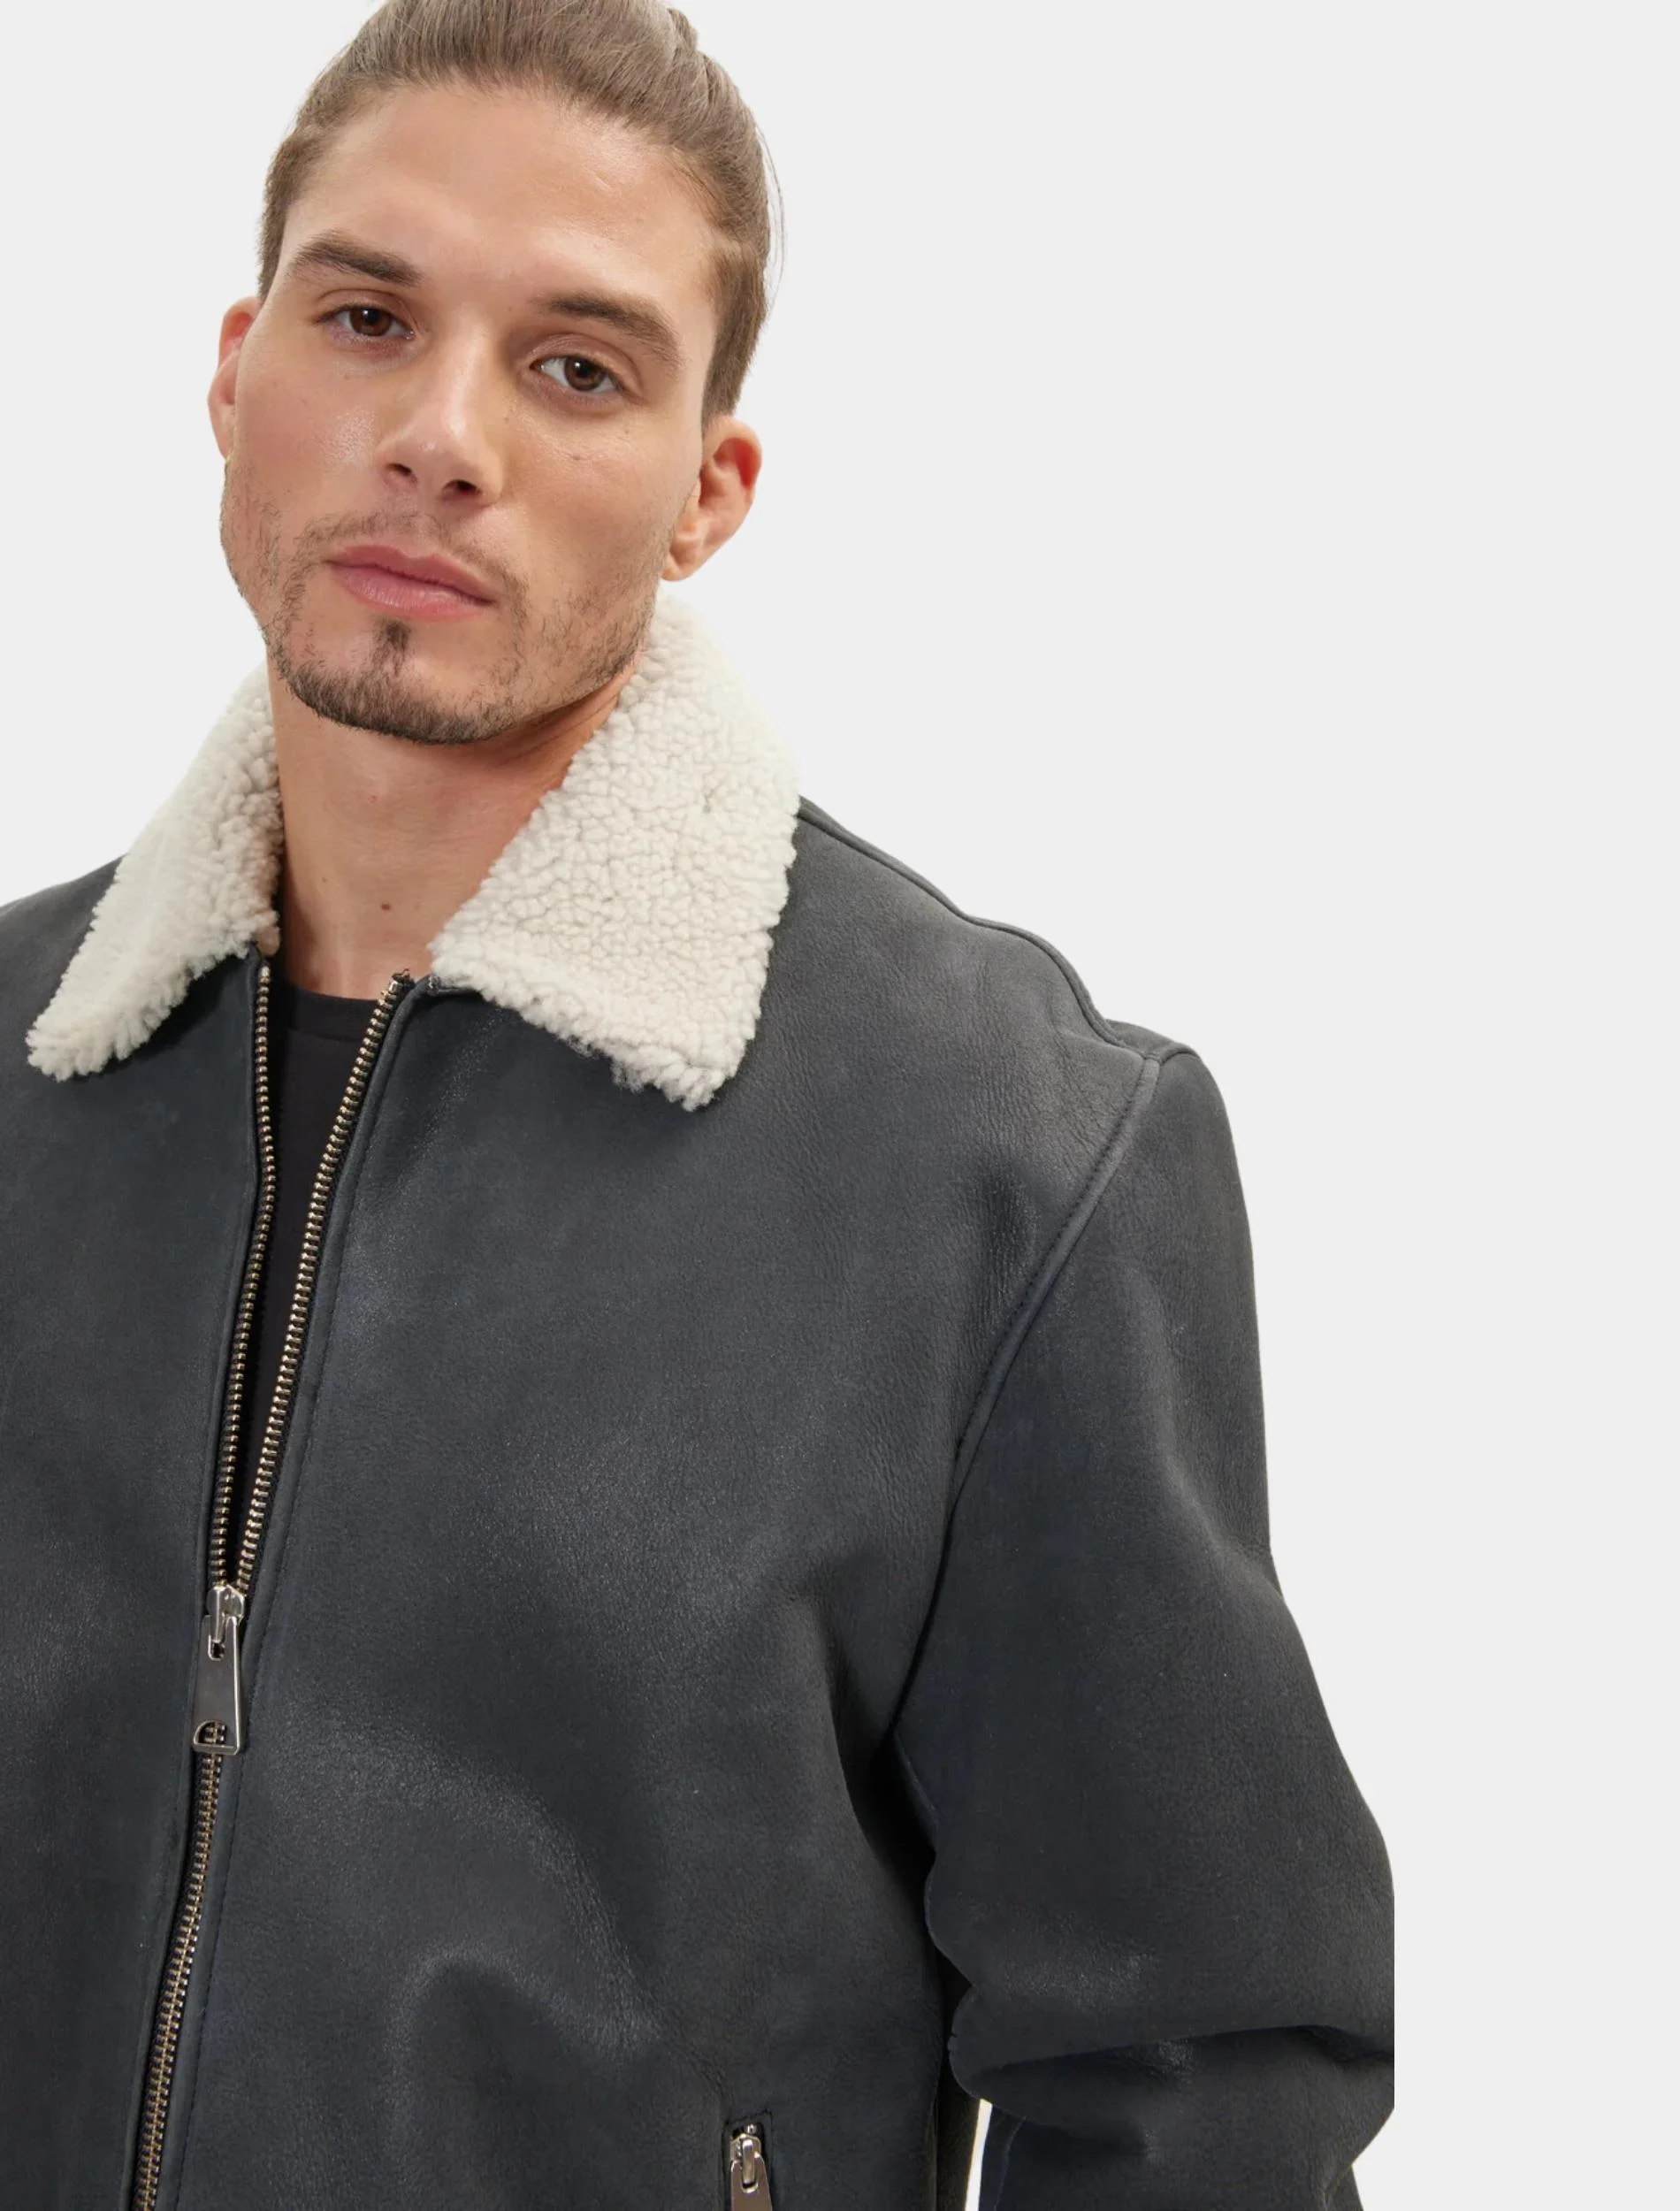 Mens Stylish Grey Leather Shearling Jacket Detail Image